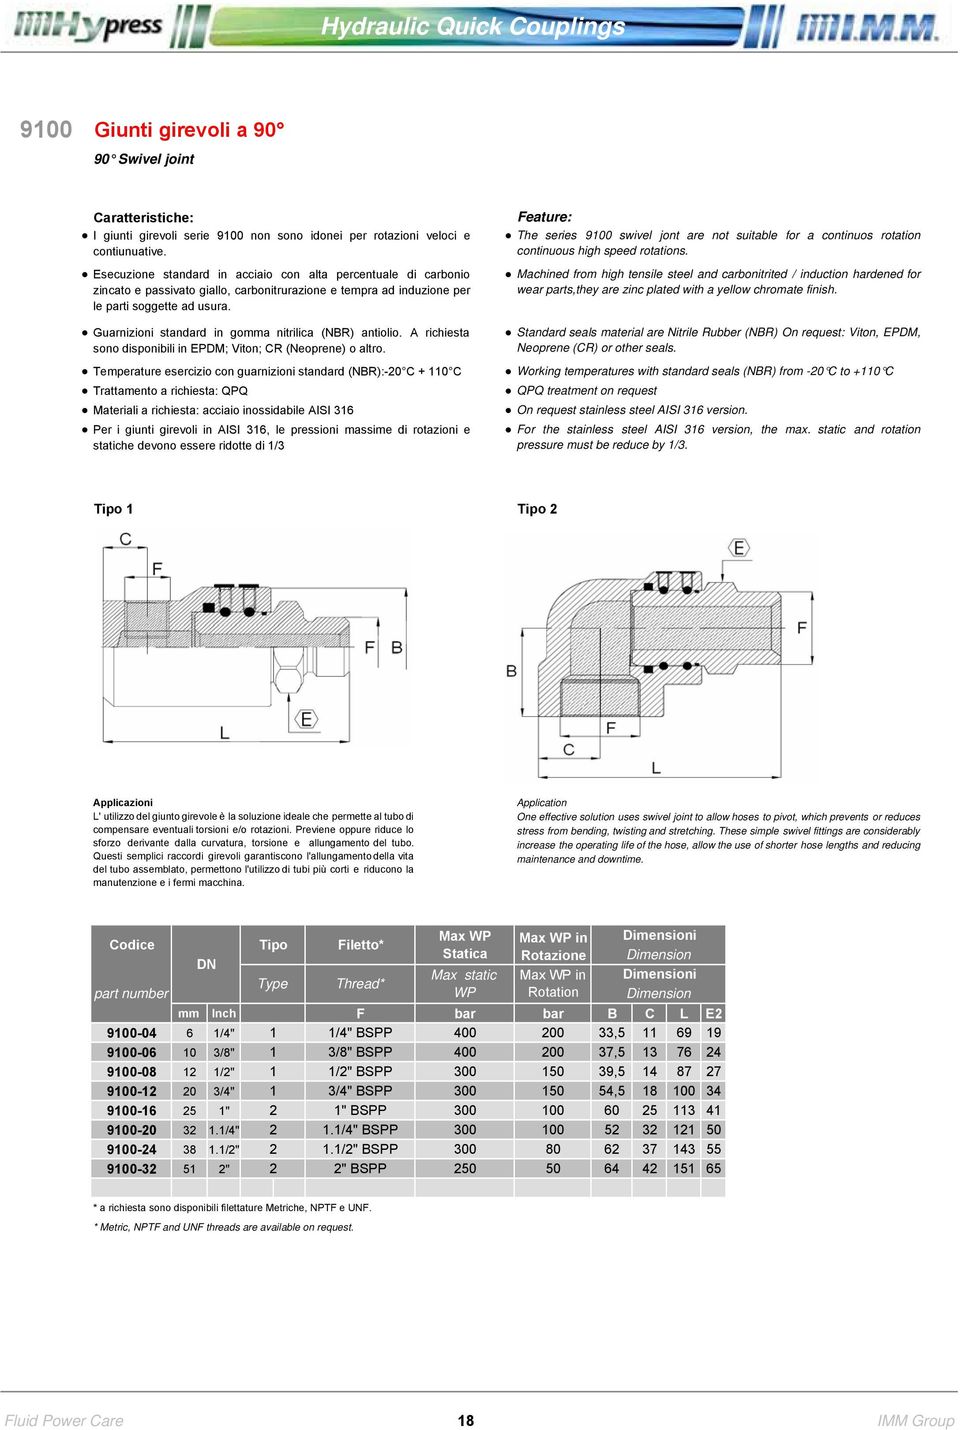 inossidabile AISI 316 Per i giunti girevoli in AISI 316, le pressioni massime di rotazioni e statiche devono essere ridotte di 1/3 The series 9100 swivel jont are not suitable for a continuos